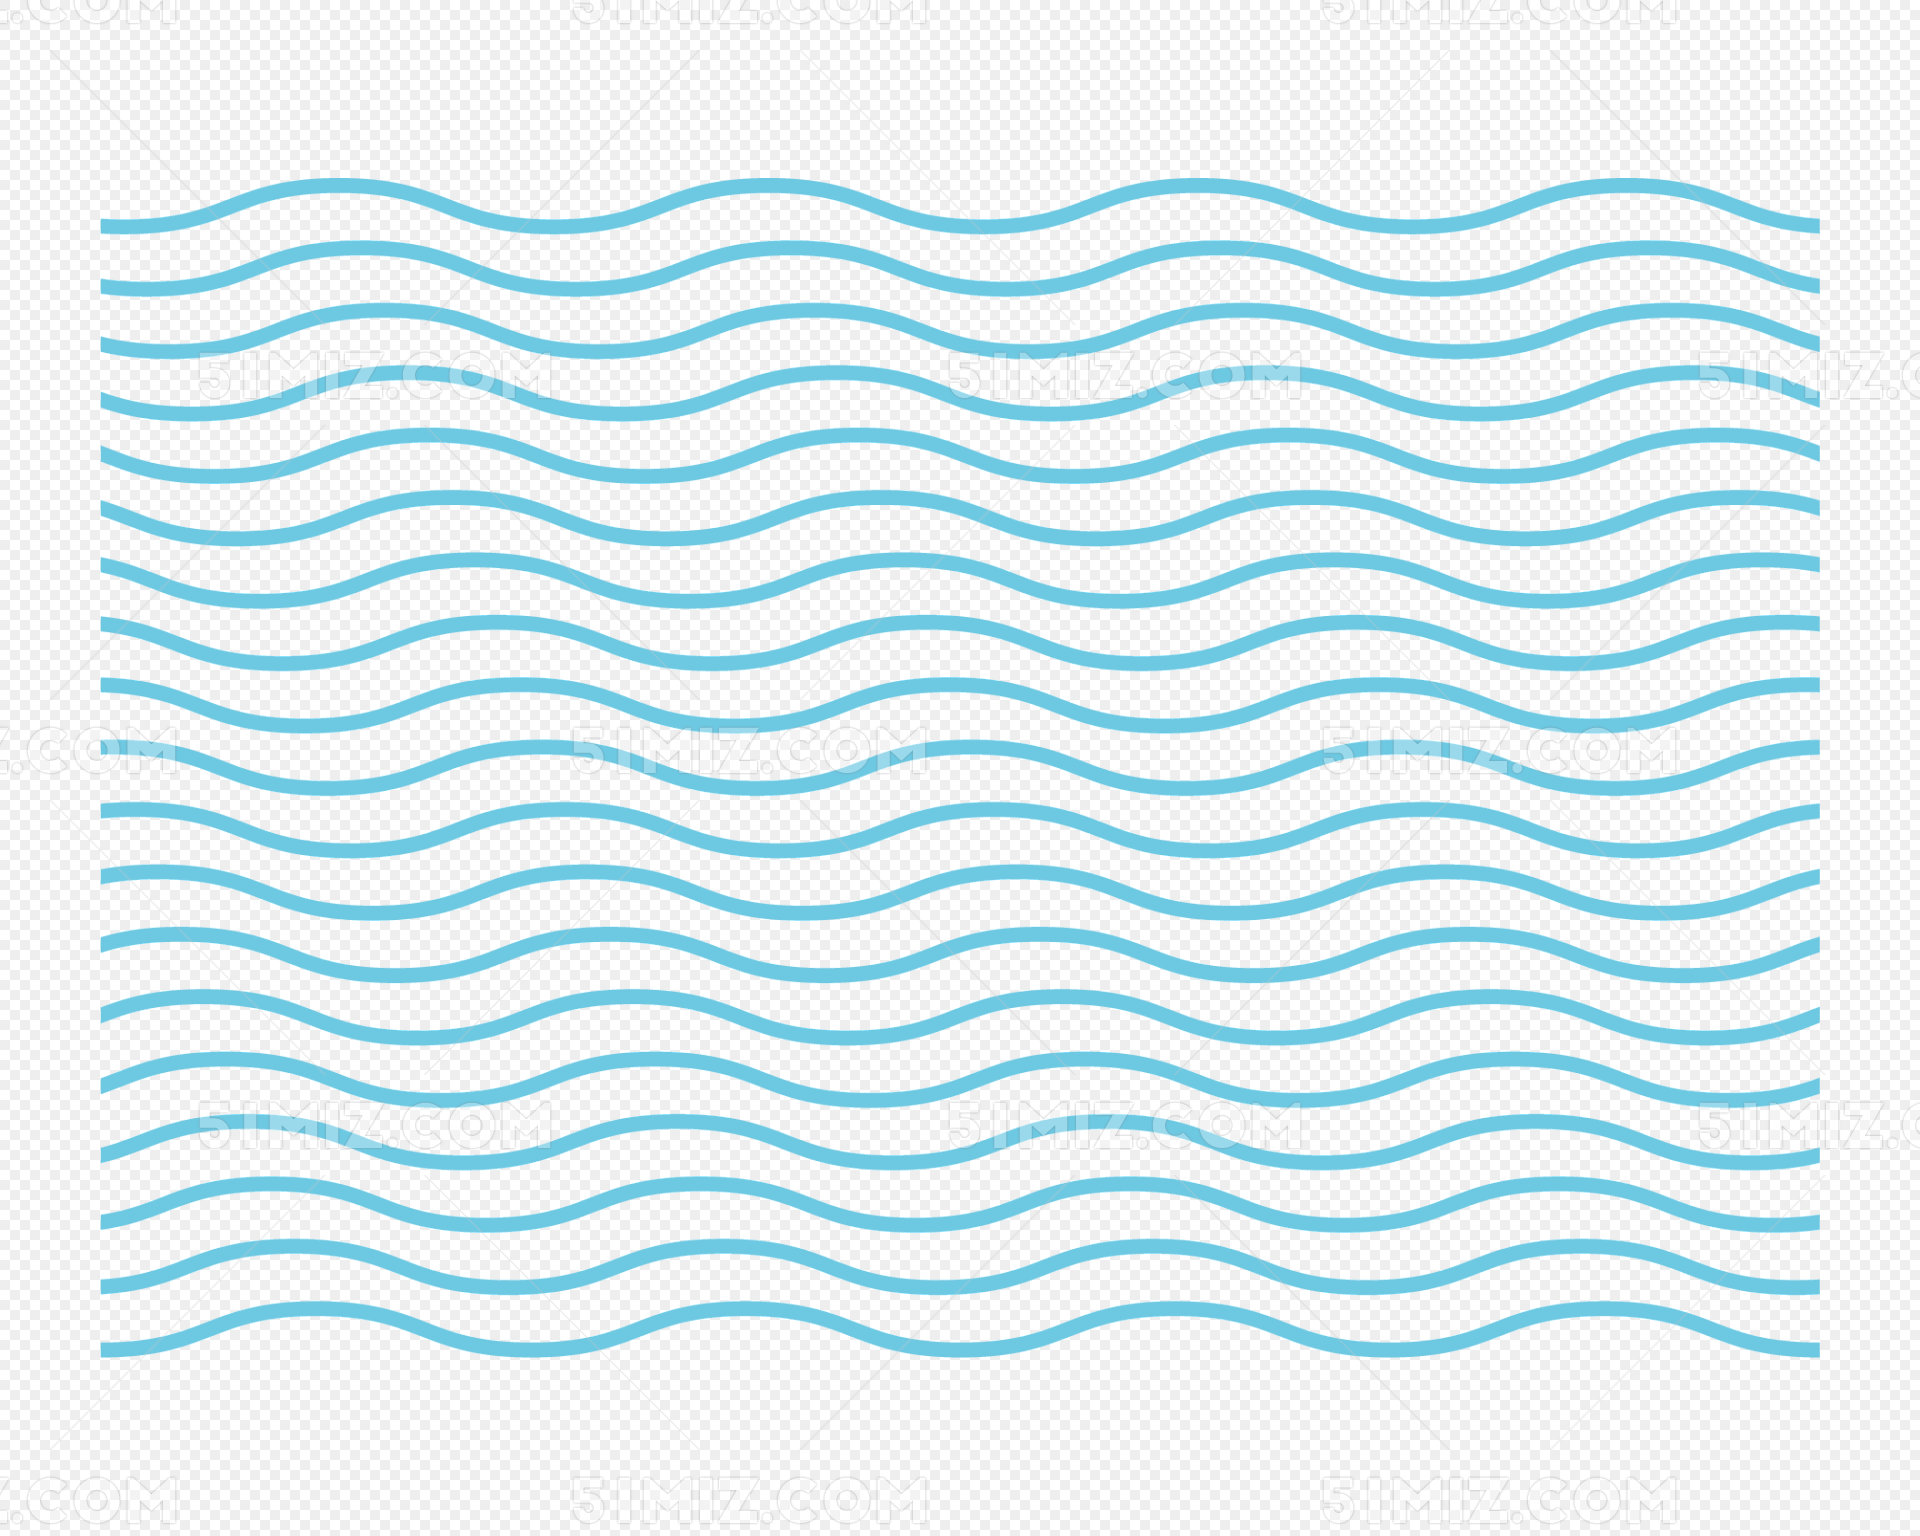 蓝线波浪纹透明-设计主题高清壁纸预览 | 10wallpaper.com